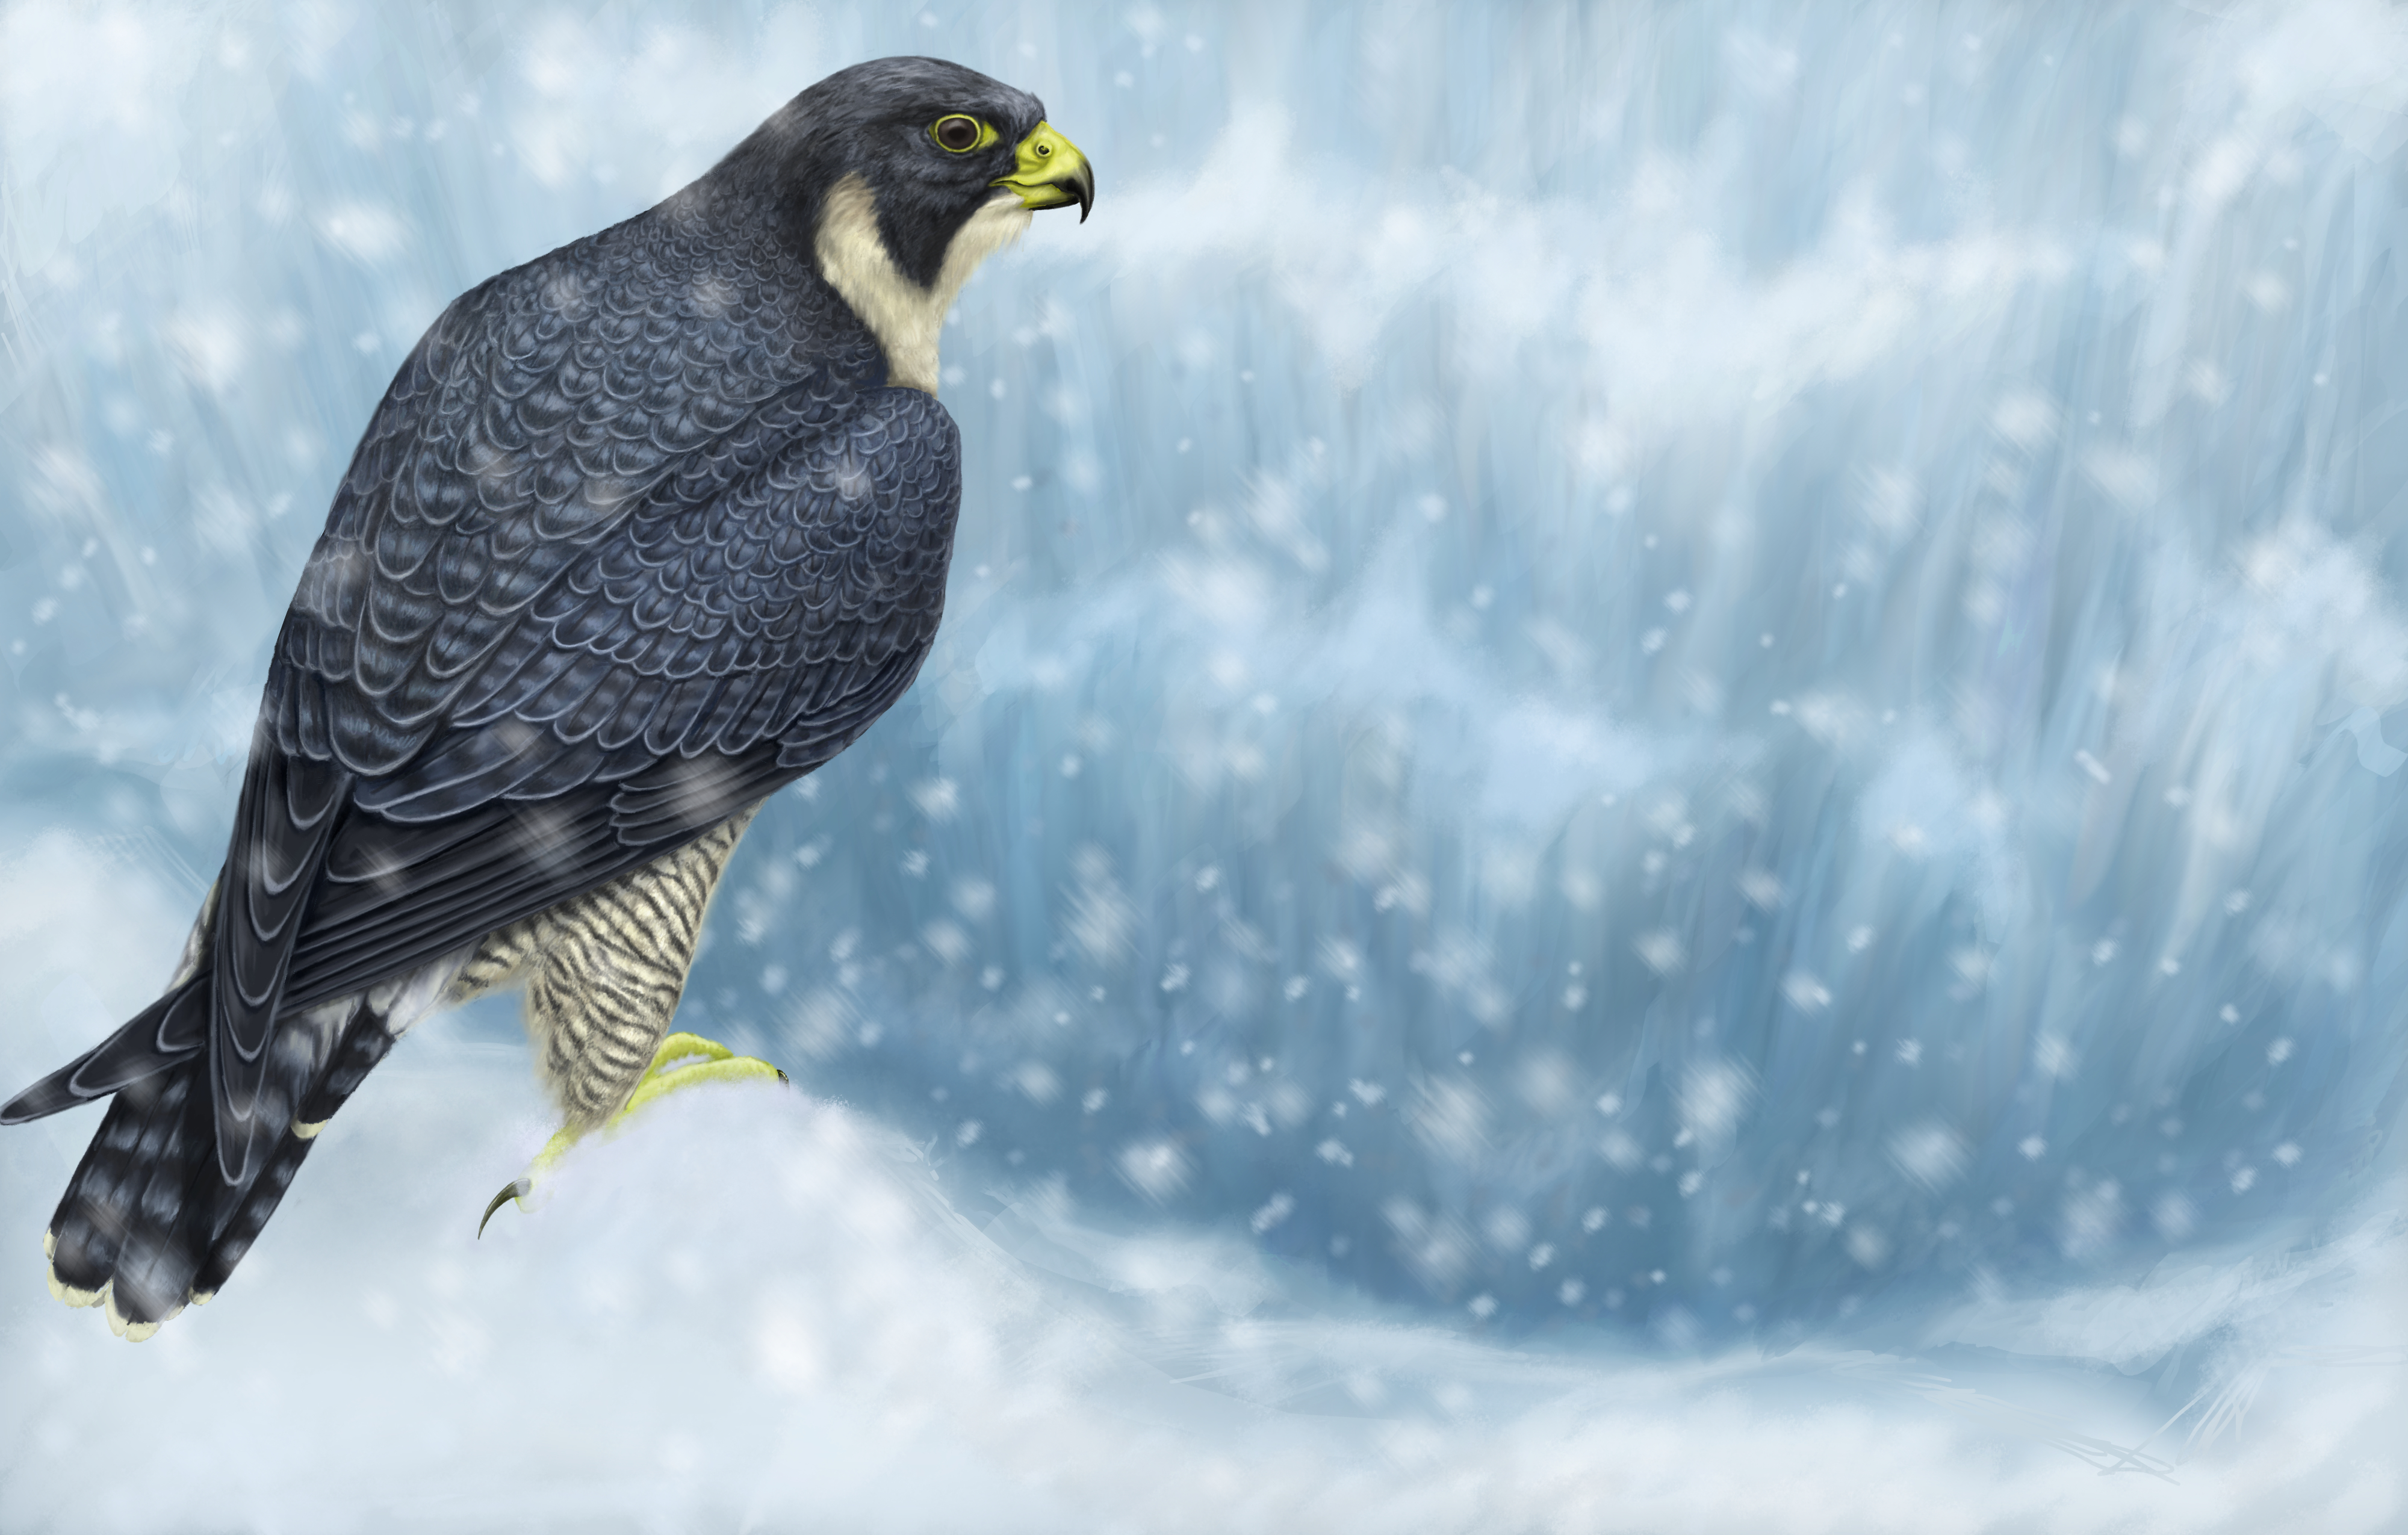 Falcon Marvel Comics Peregrine Falcon Bird Bird Of Prey Snow Winter Snowfall 4000x2550